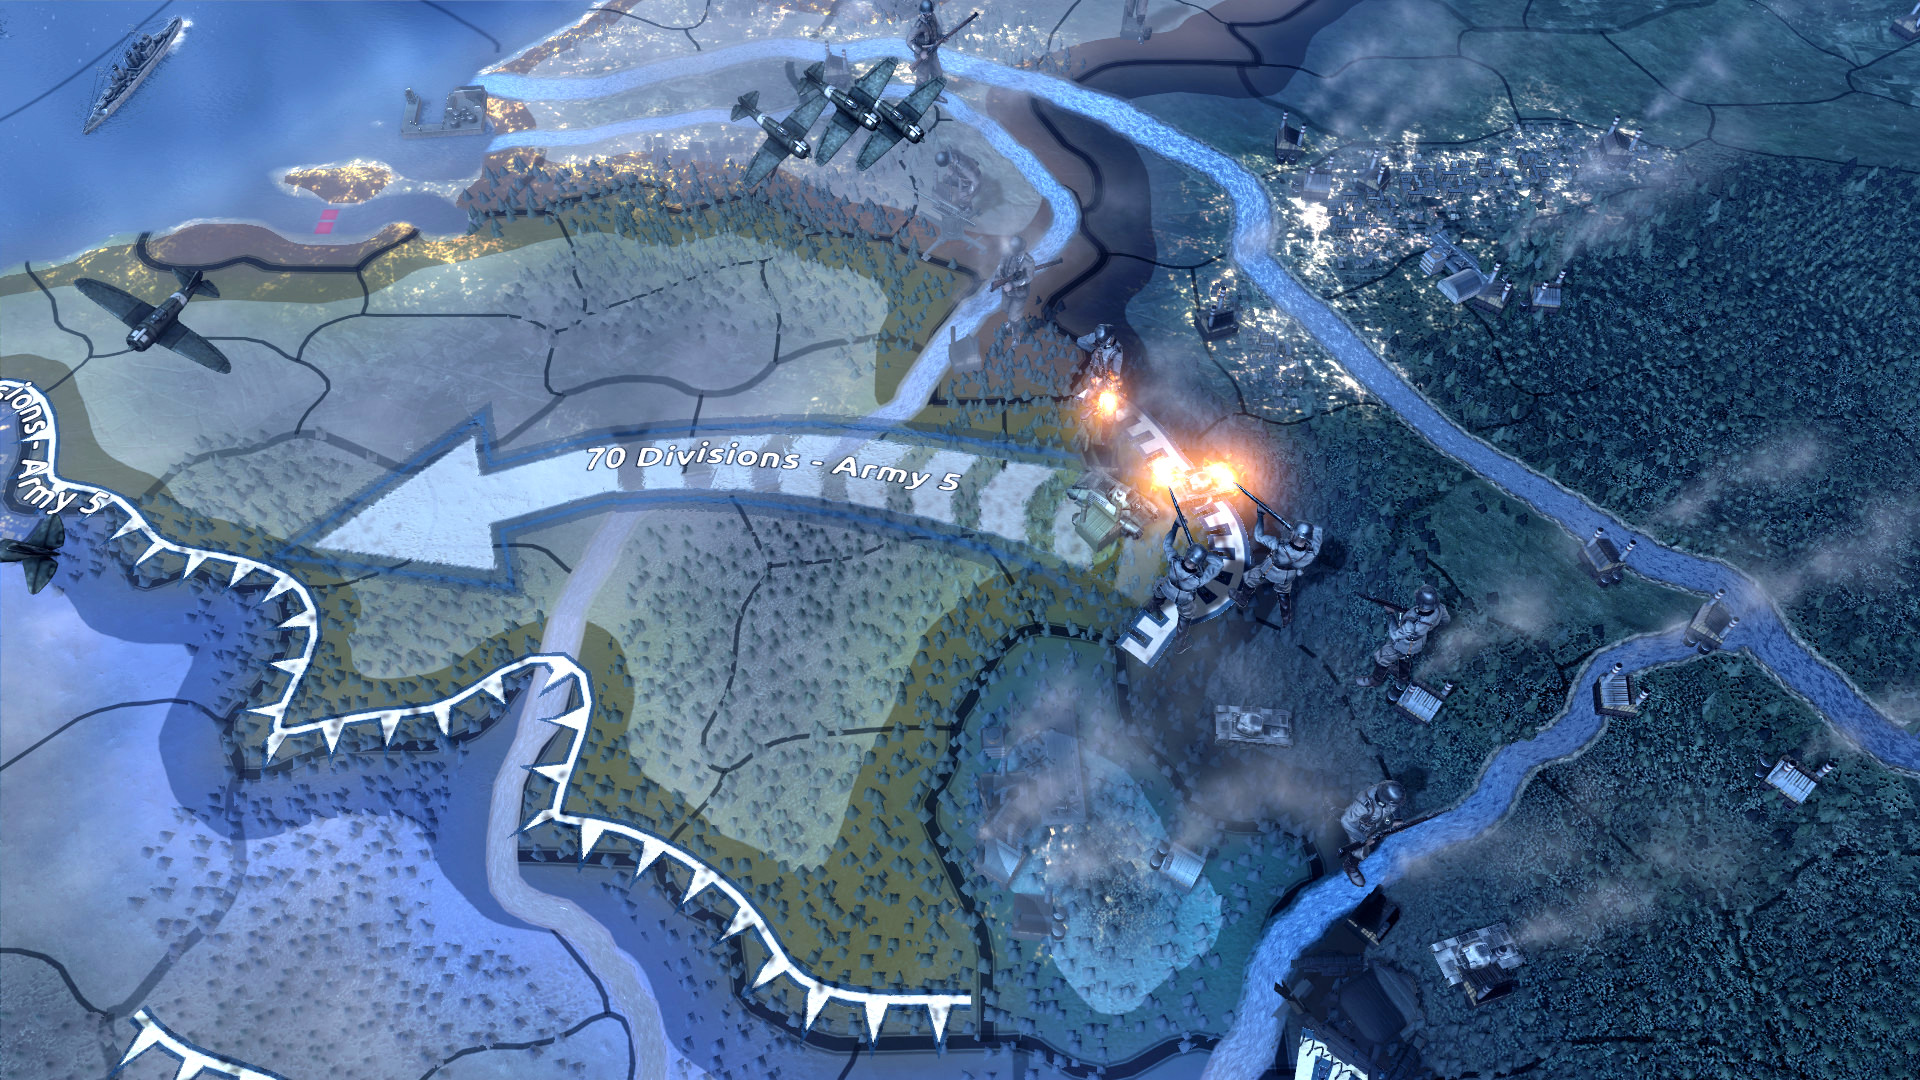 بہترین جنگ کے کھیل: آئرن IV کے دل۔ تصویر میں فوجی قوتوں کے ساتھ ایک نقشہ دکھایا گیا ہے۔